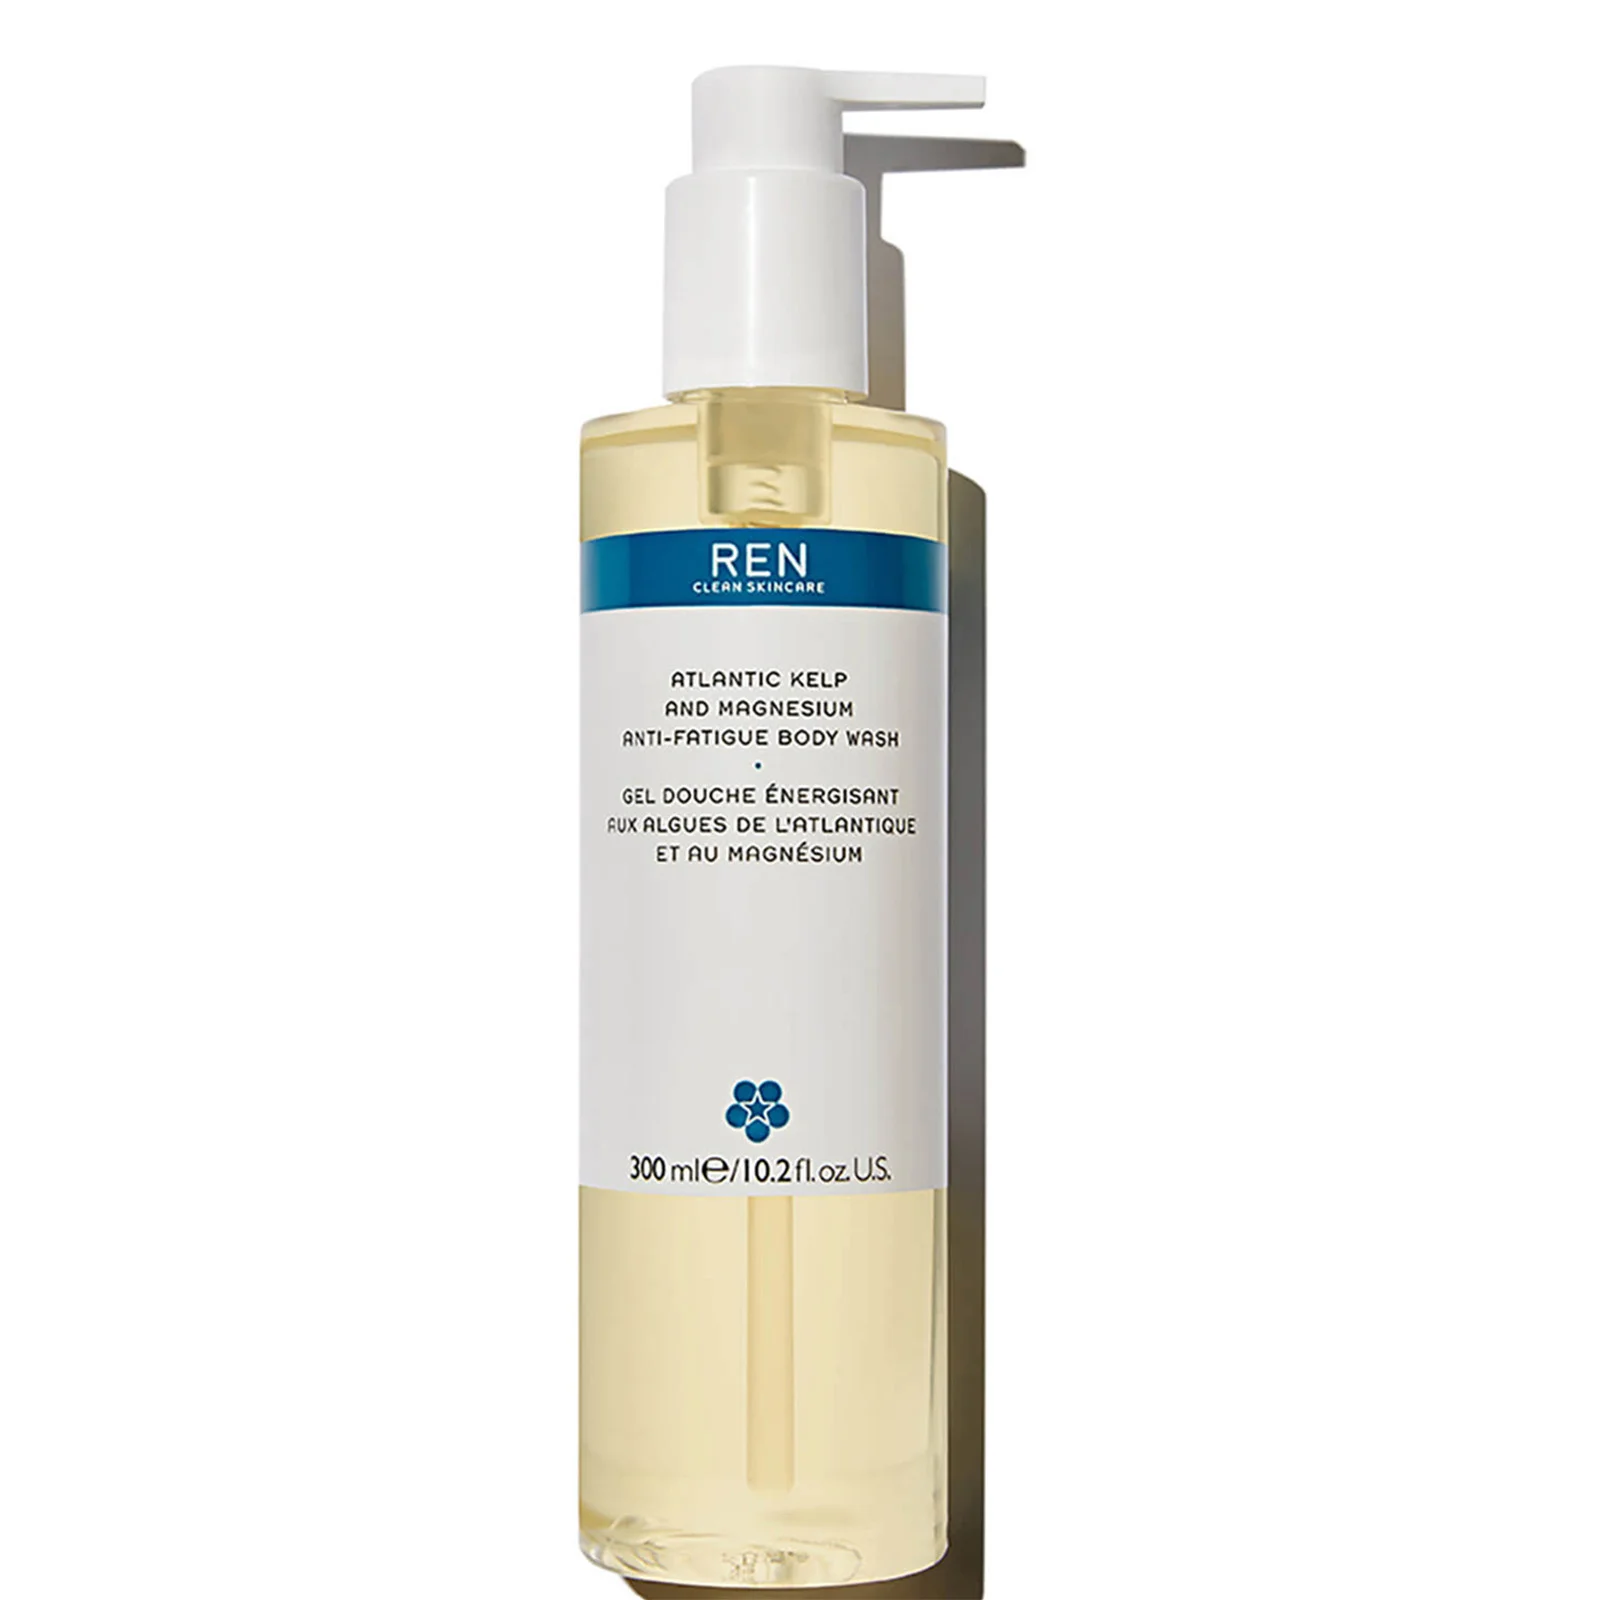 REN Clean Skincare Skincare Atlantic Kelp and Magnesium Anti-Fatigue Body Wash 300ml Image 1